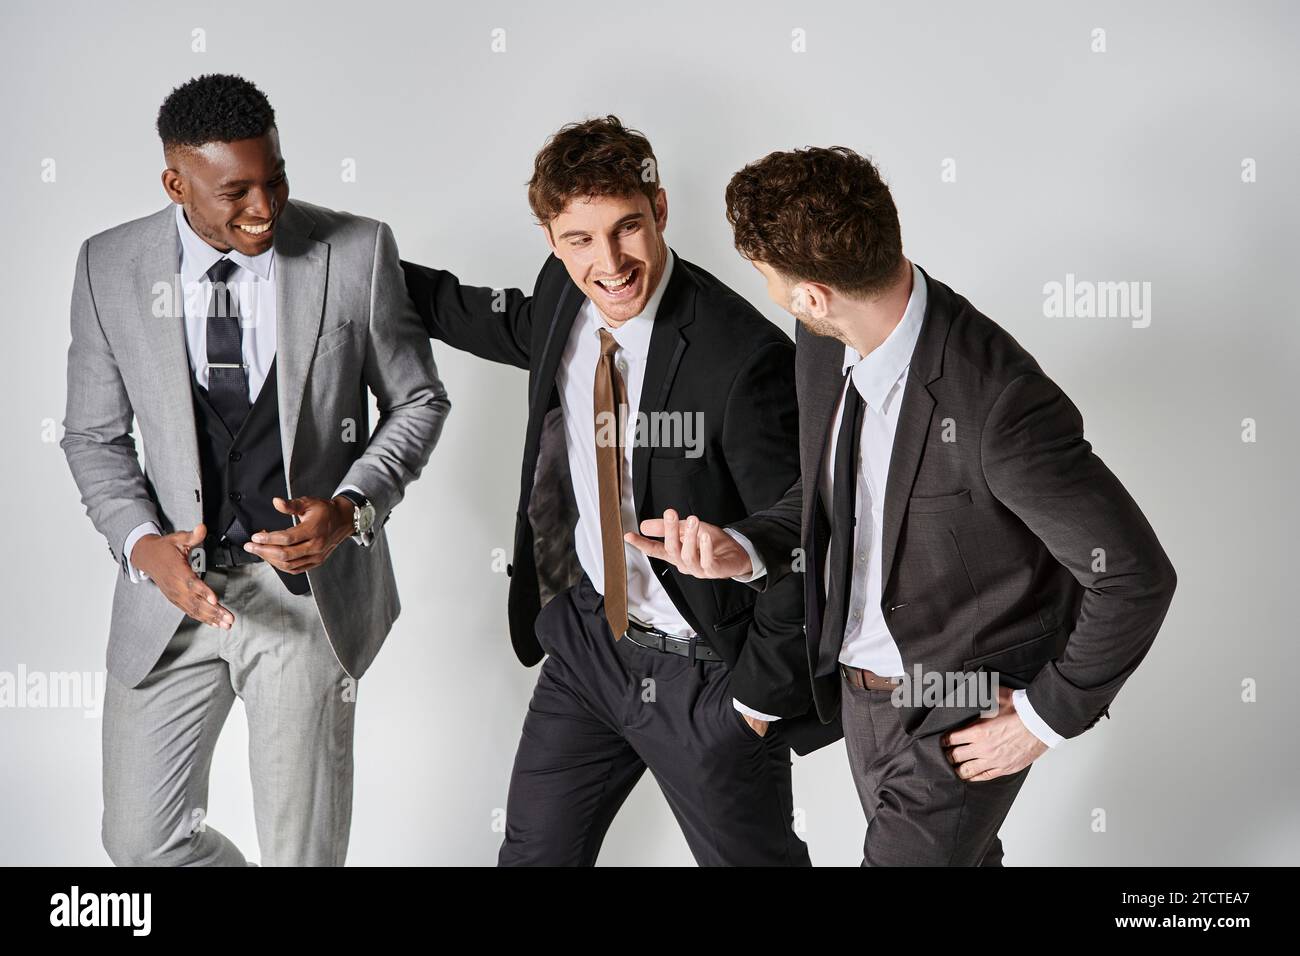 Junge glückliche multikulturelle Freunde in eleganten Geschäftskleidung, die fröhlich auf grauem Hintergrund lächeln Stockfoto